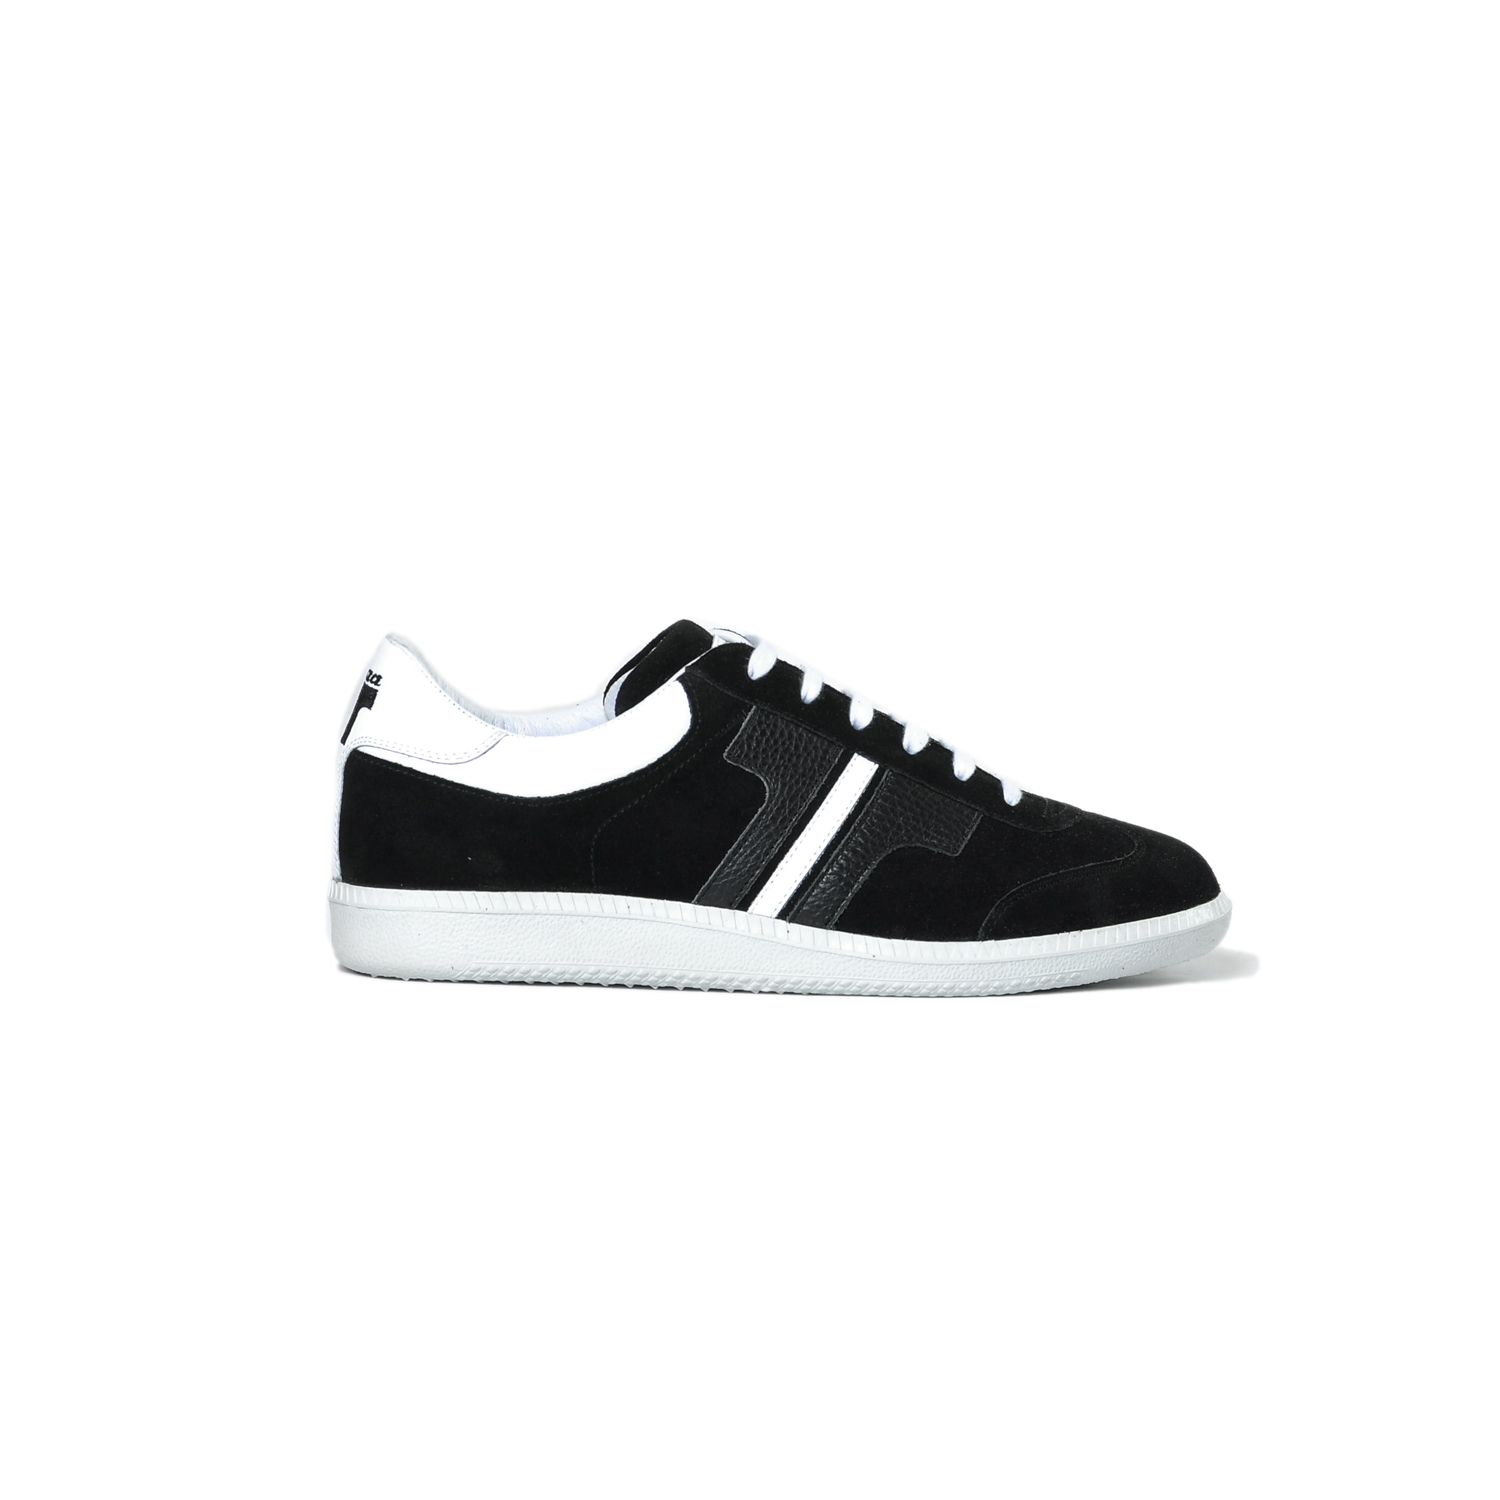 Tisza shoes - Compakt - Black-white